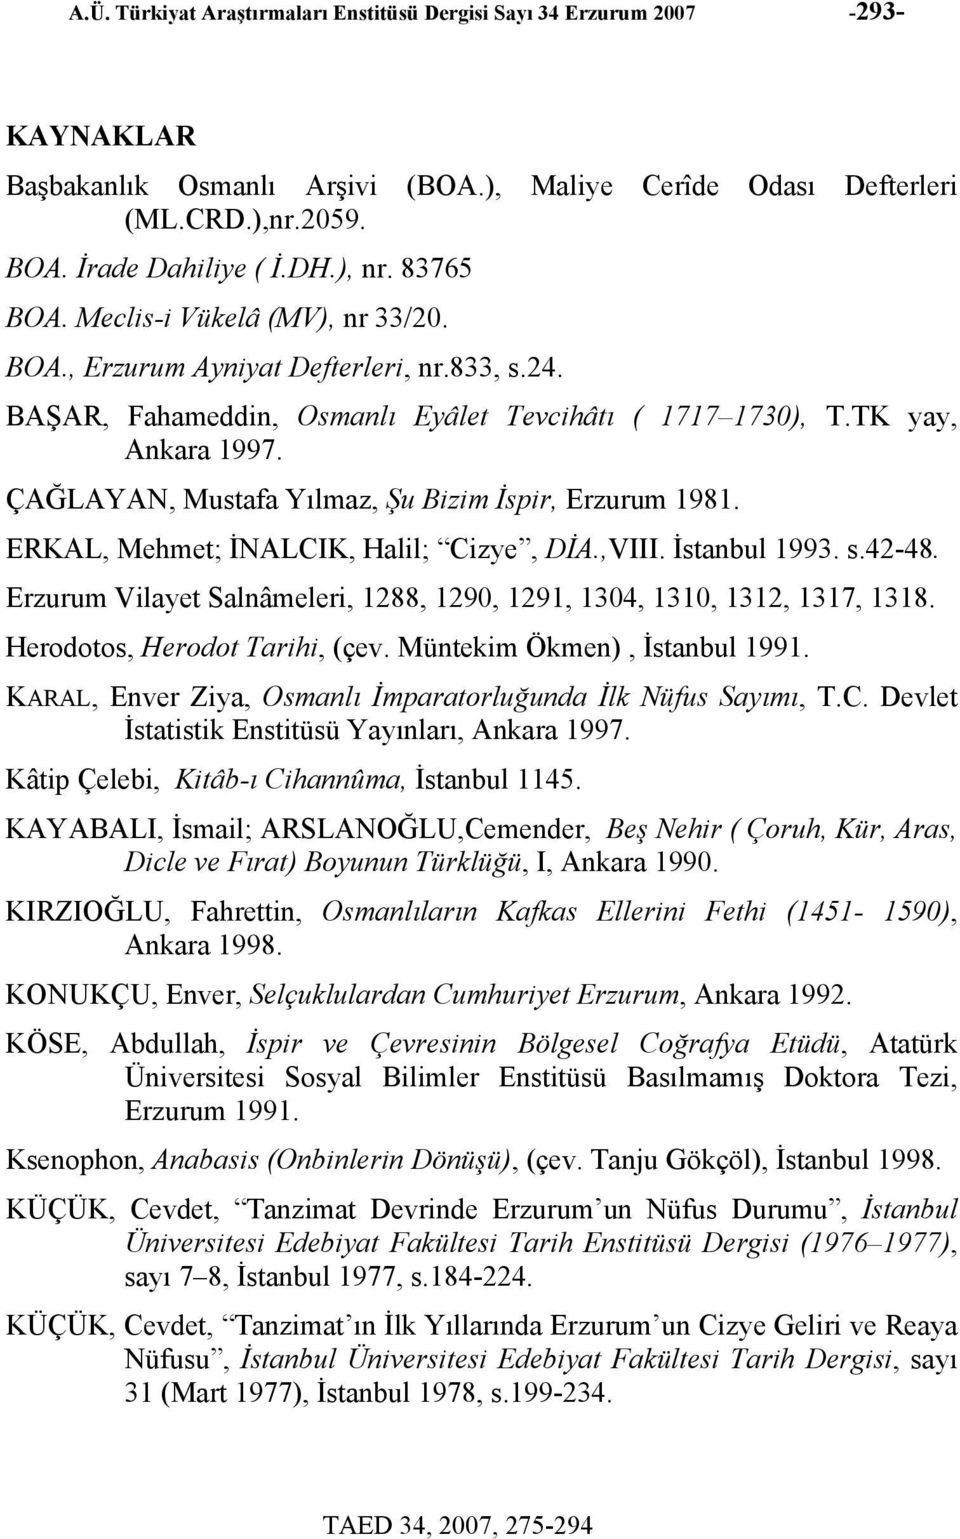 ÇAĞLAYAN, Mustafa Yılmaz, Şu Bizim İspir, Erzurum 1981. ERKAL, Mehmet; İNALCIK, Halil; Cizye, DİA.,VIII. İstanbul 1993. s.42-48.